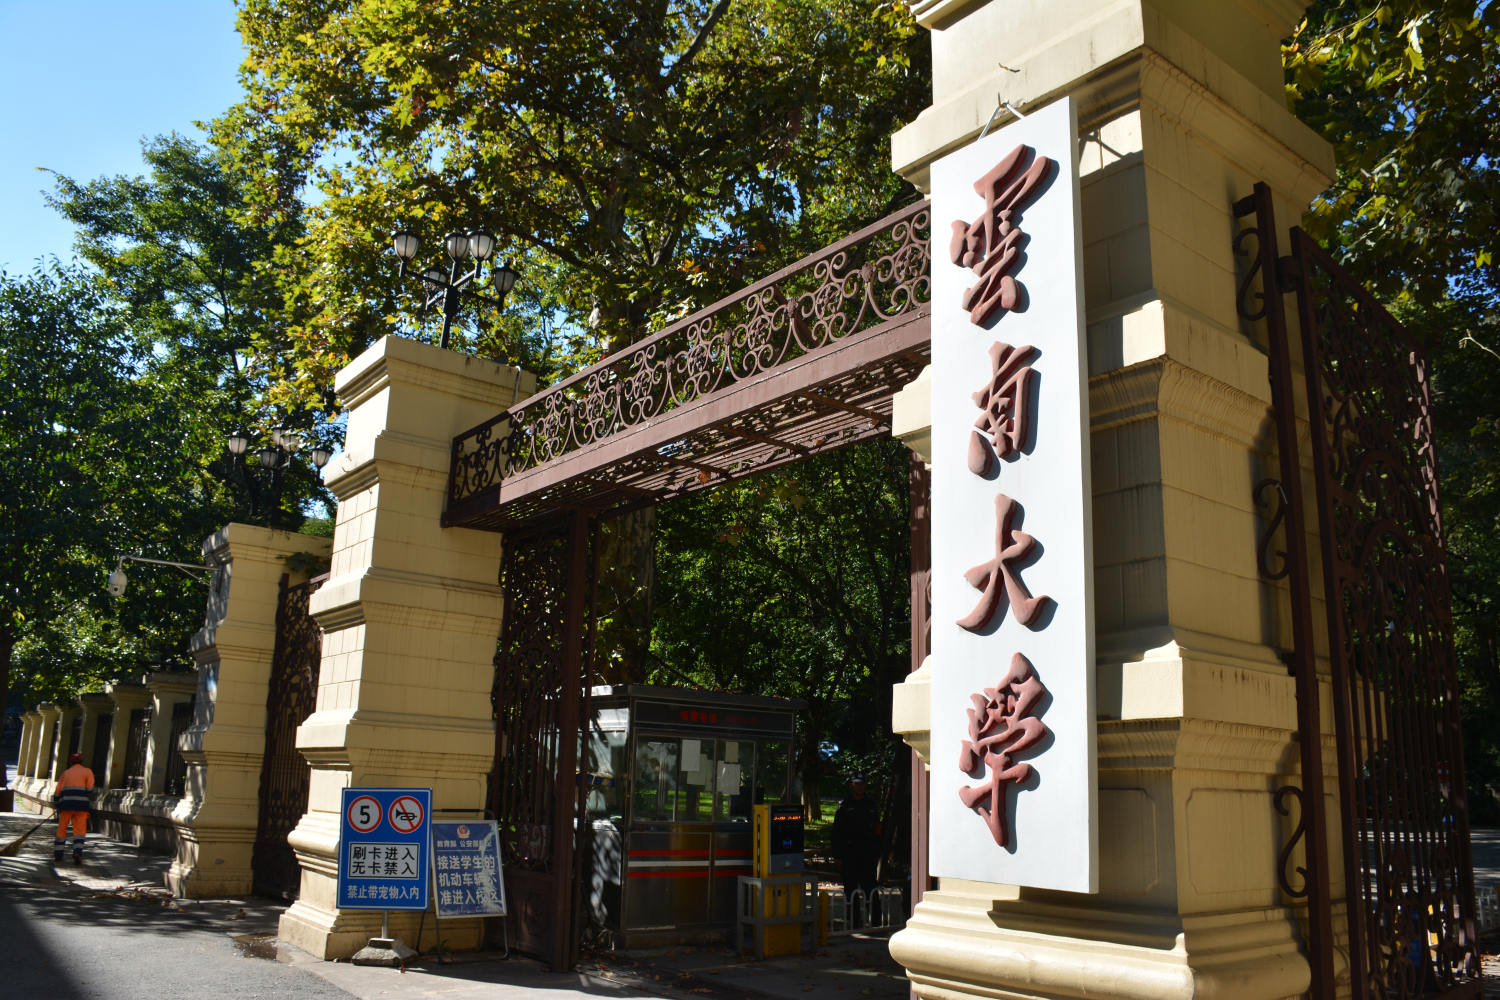 Đại học Vân Nam - Yunnan University - 云南大学 - VNTalent